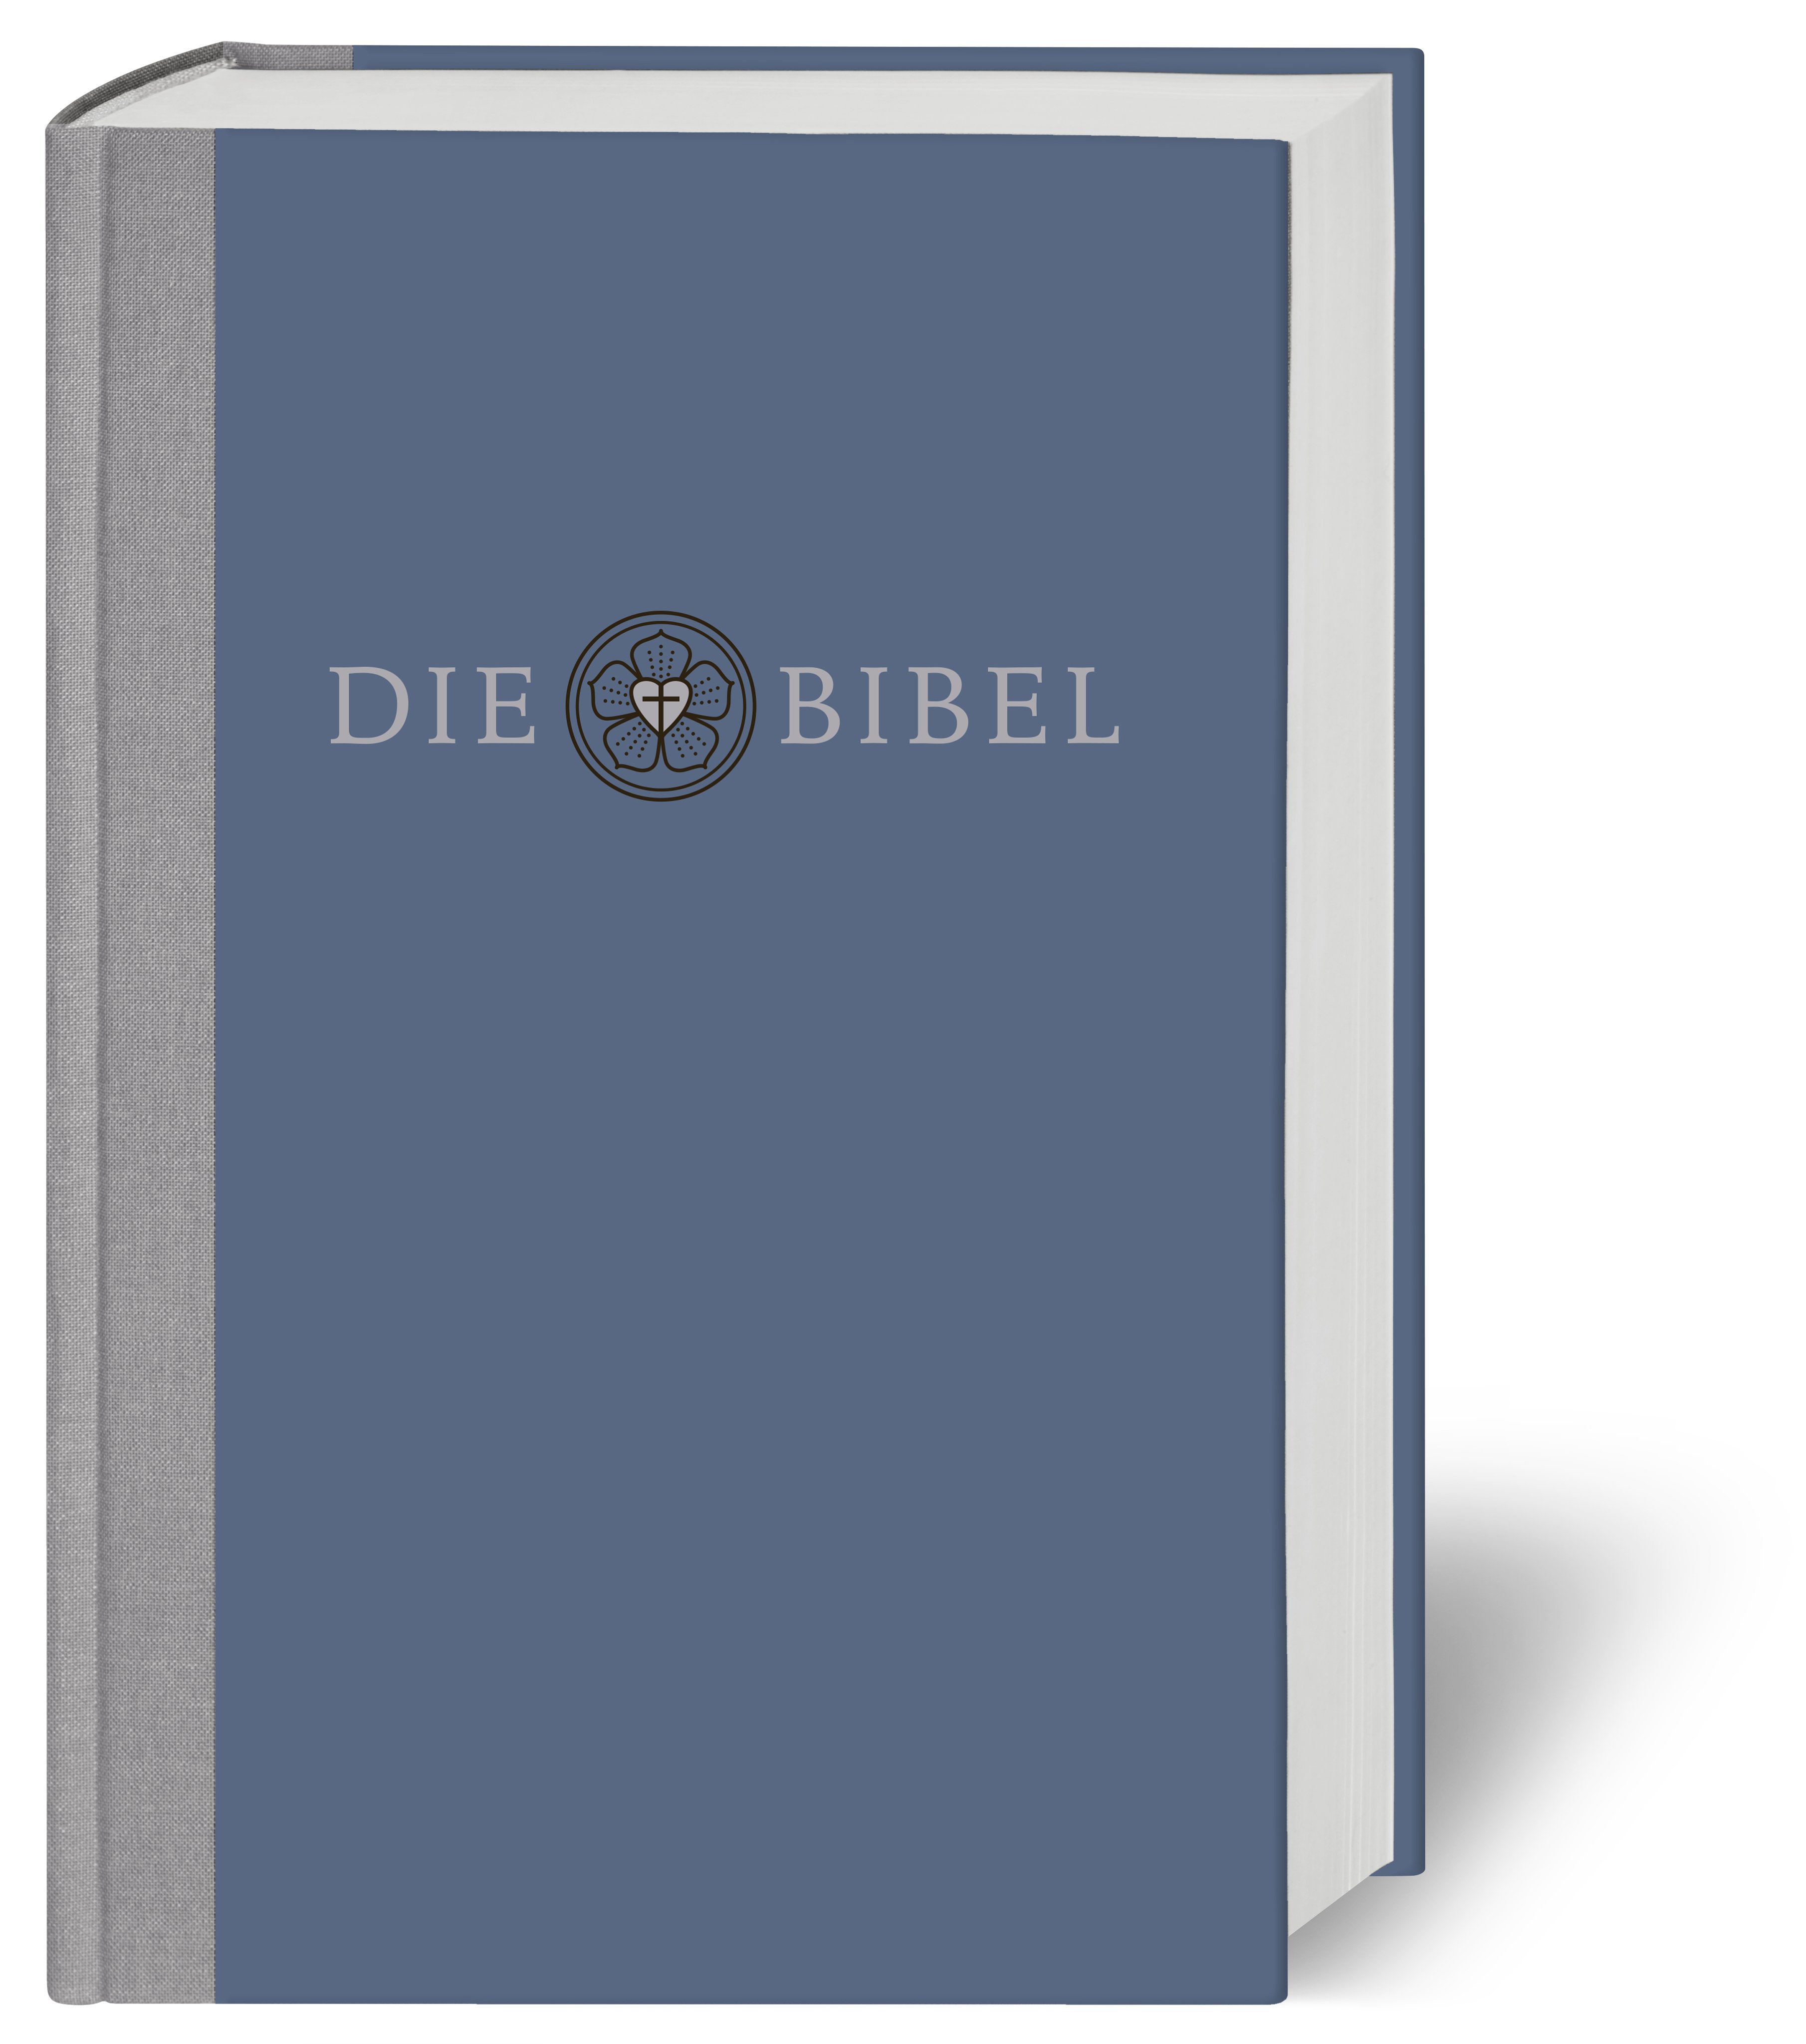 Lutherbibel revidiert - Die Prachtbibel mit Bildern von Lucas Cranach